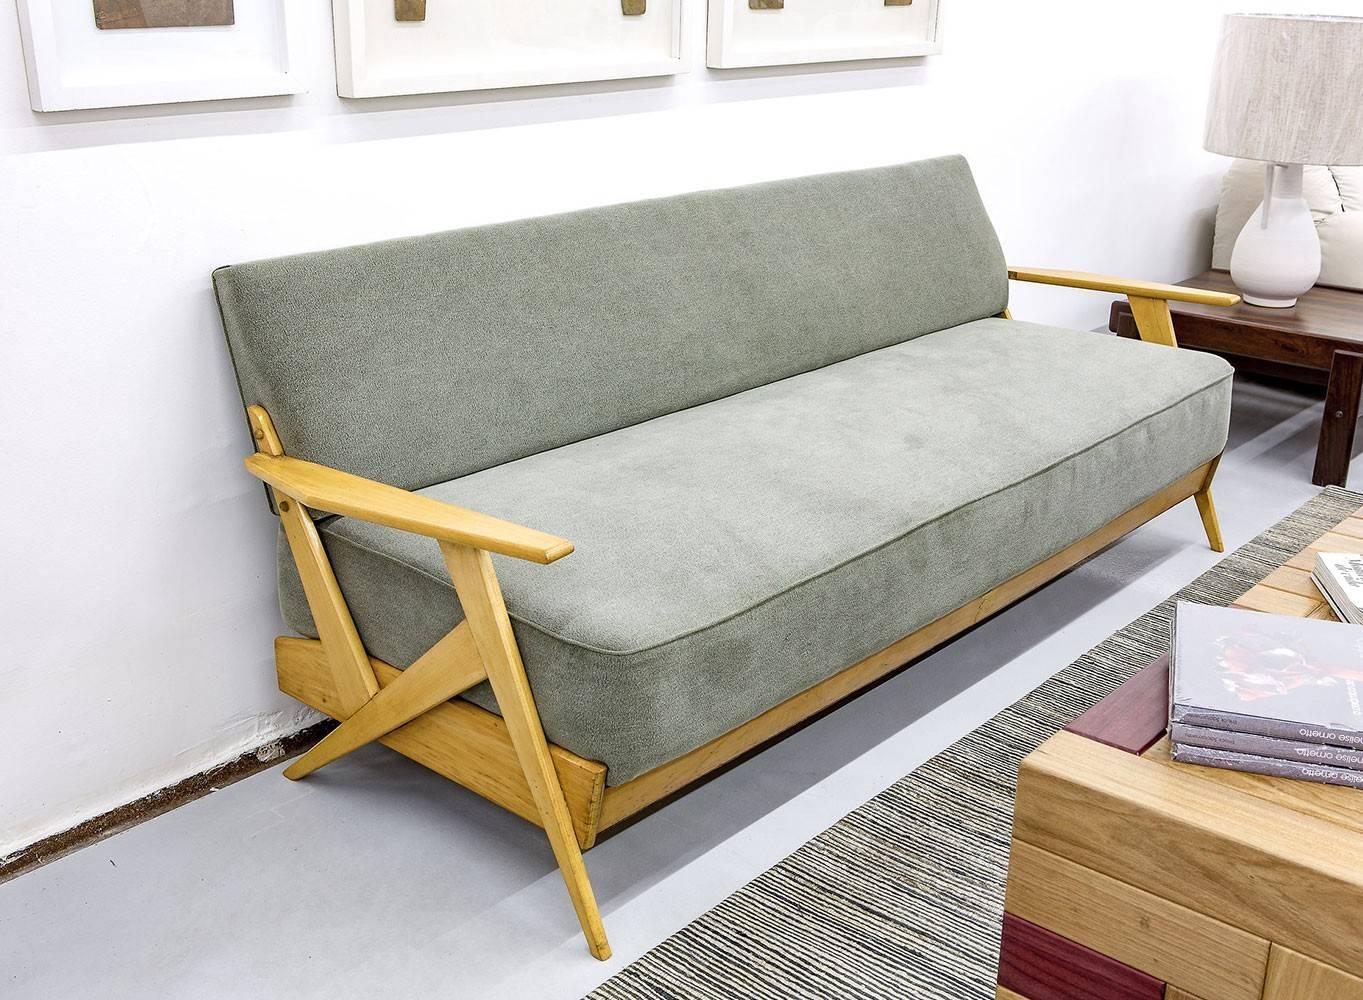 Ce canapé du milieu du siècle, en bois et tissu gris, a été produit dans les années 1950 à São Paulo par le studio de Zanine. Il s'agit d'un bon exemple de ses premières pièces.

José Zanine Caldas était un designer, un architecte et un artiste. Son